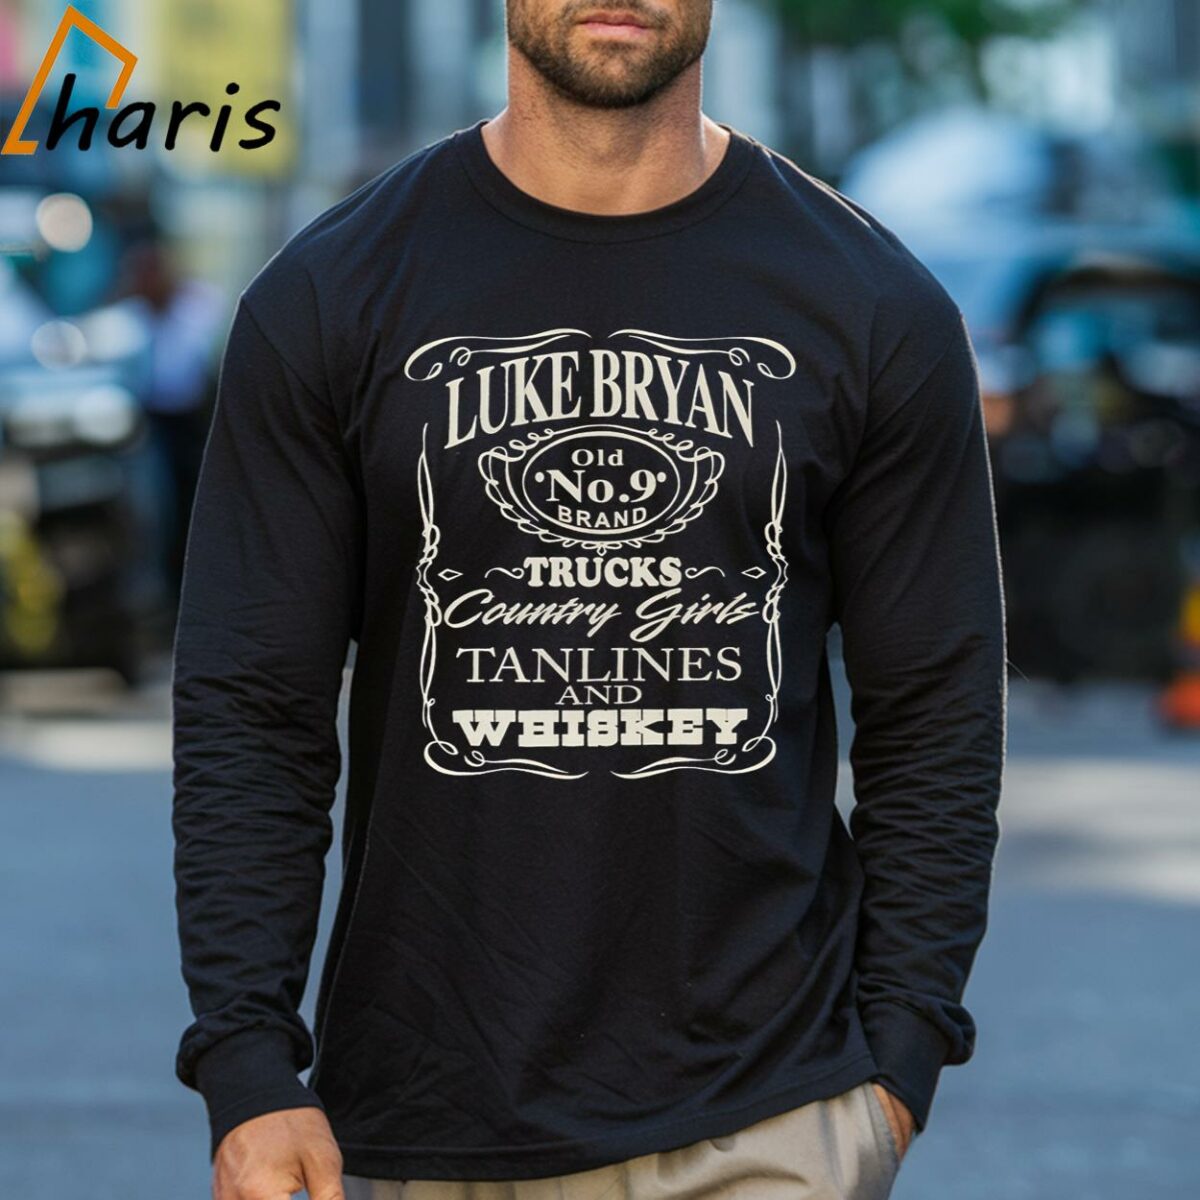 Luke Bryan Concert Shirt Black Kill Lights Tee Trucks Tanlines Whiskey 3 Long sleeve shirt